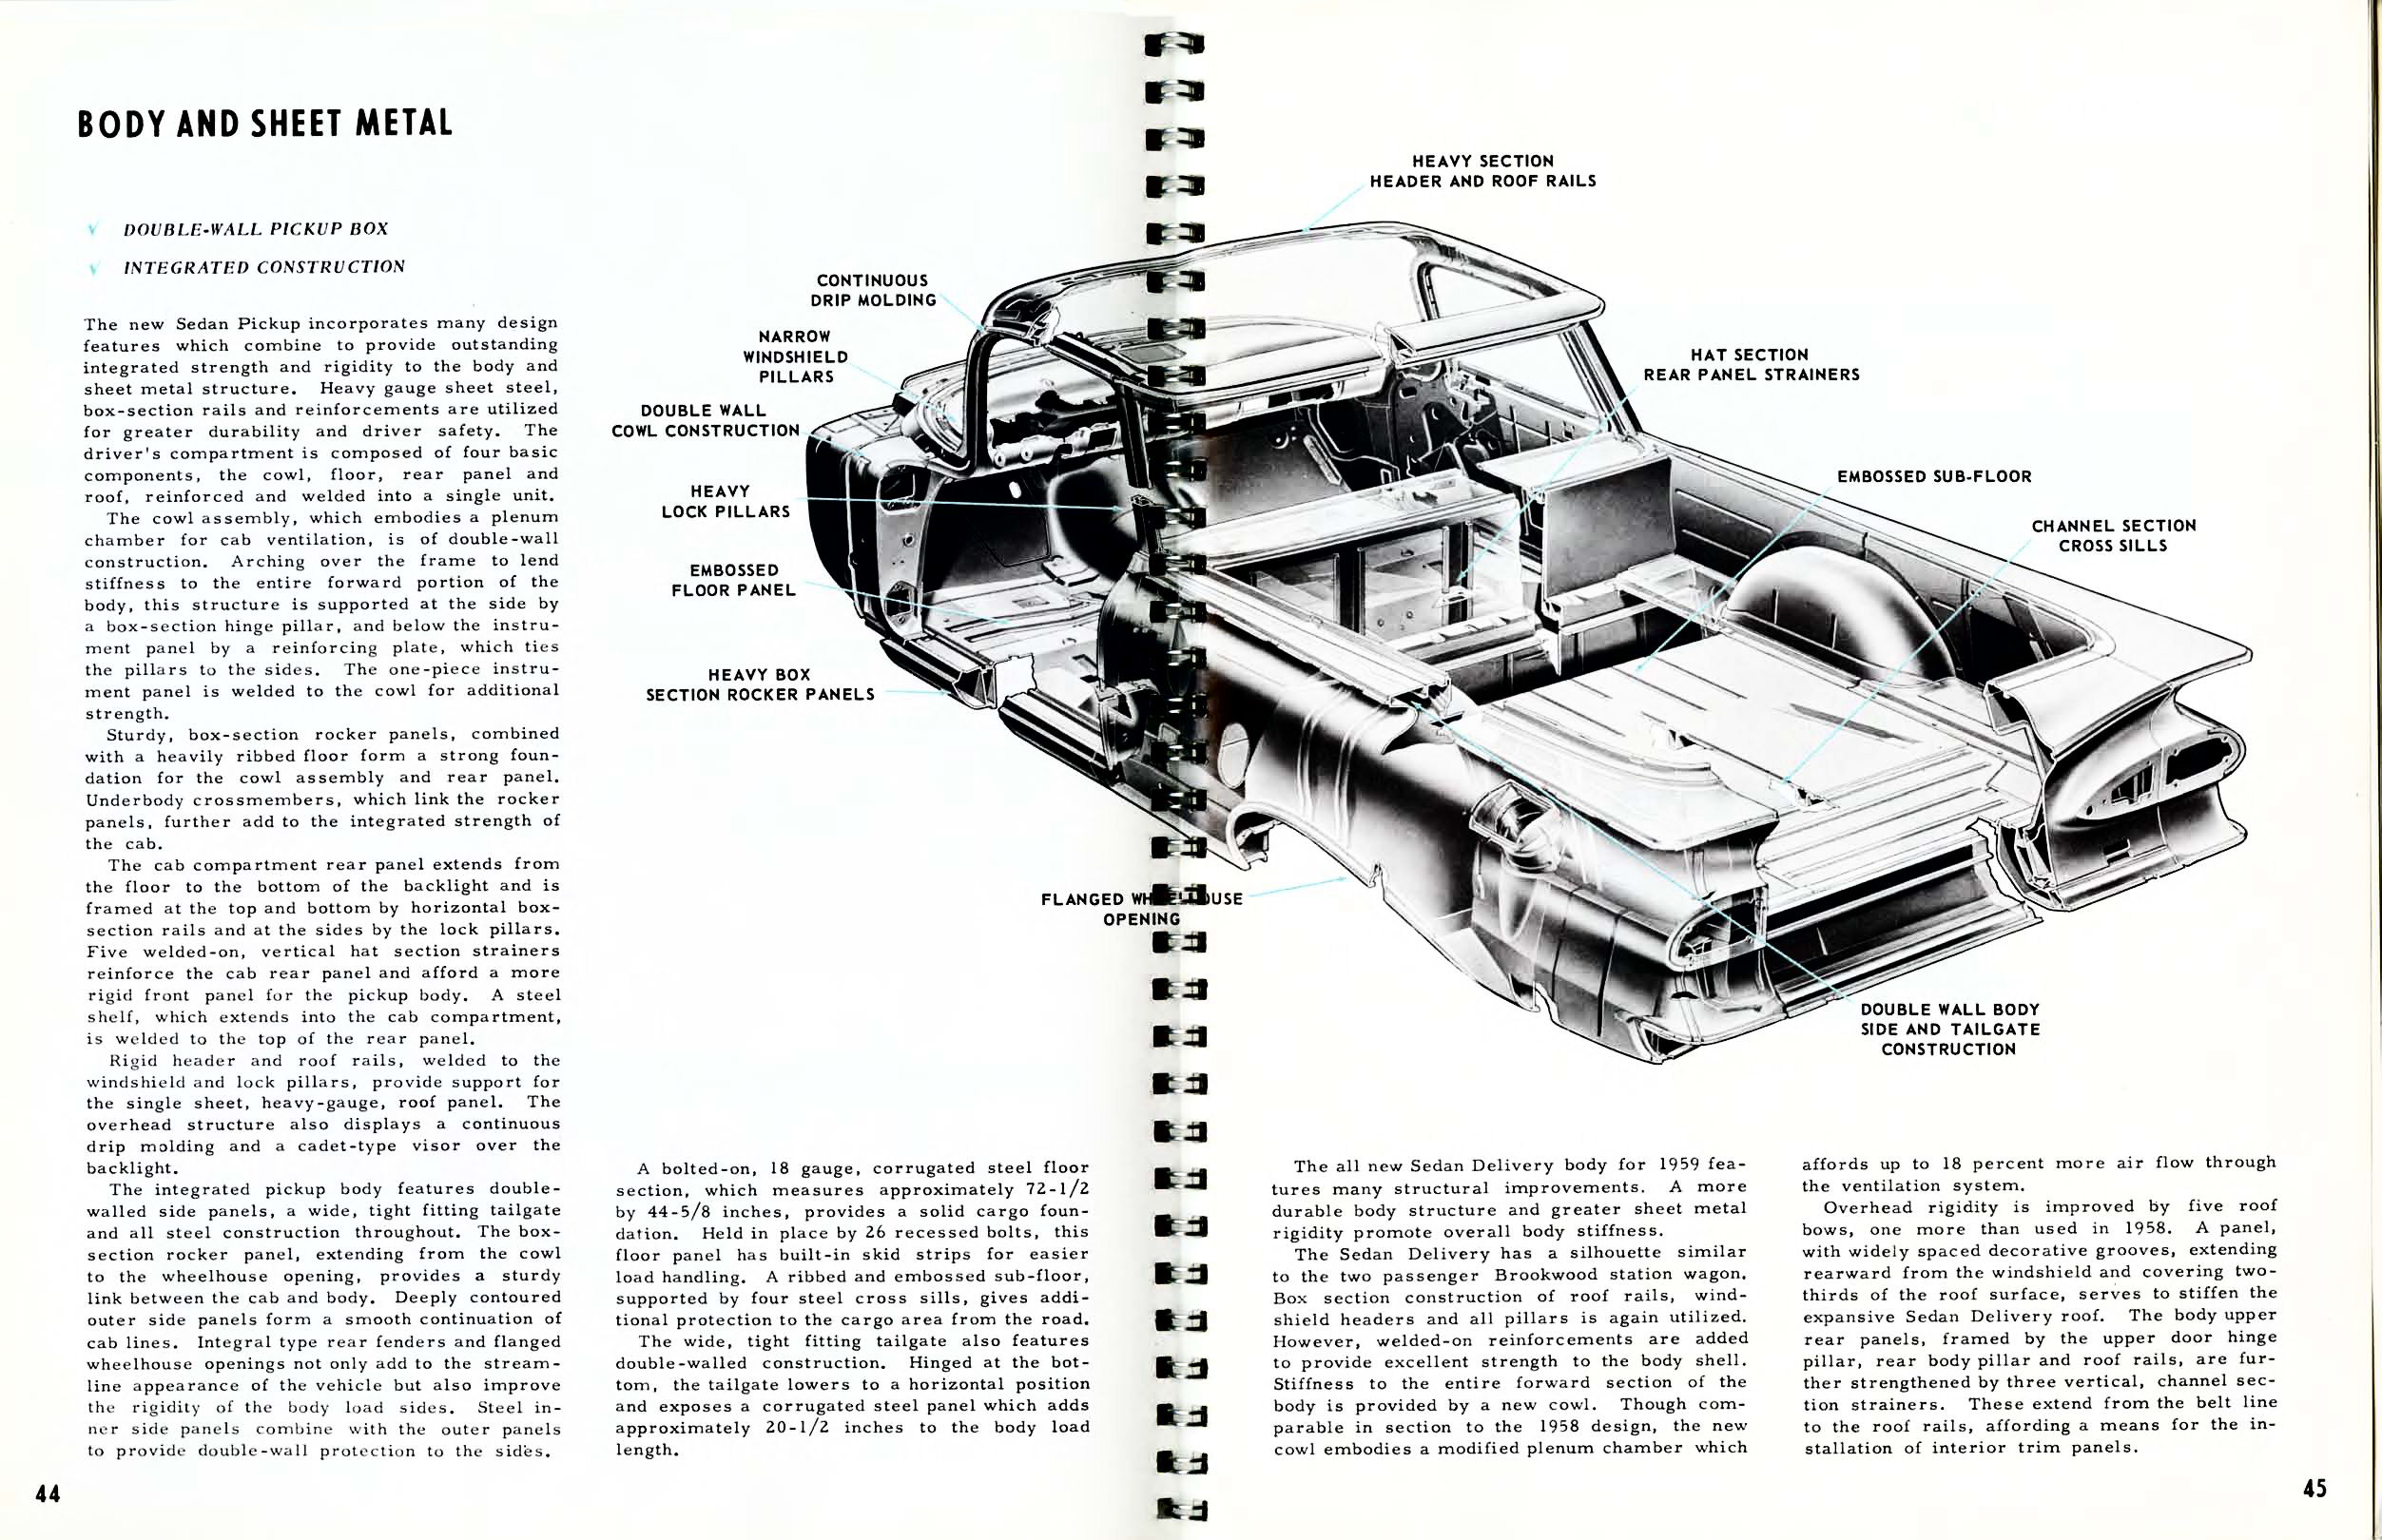 1959 Chevrolet Truck Engineering Features-44-45